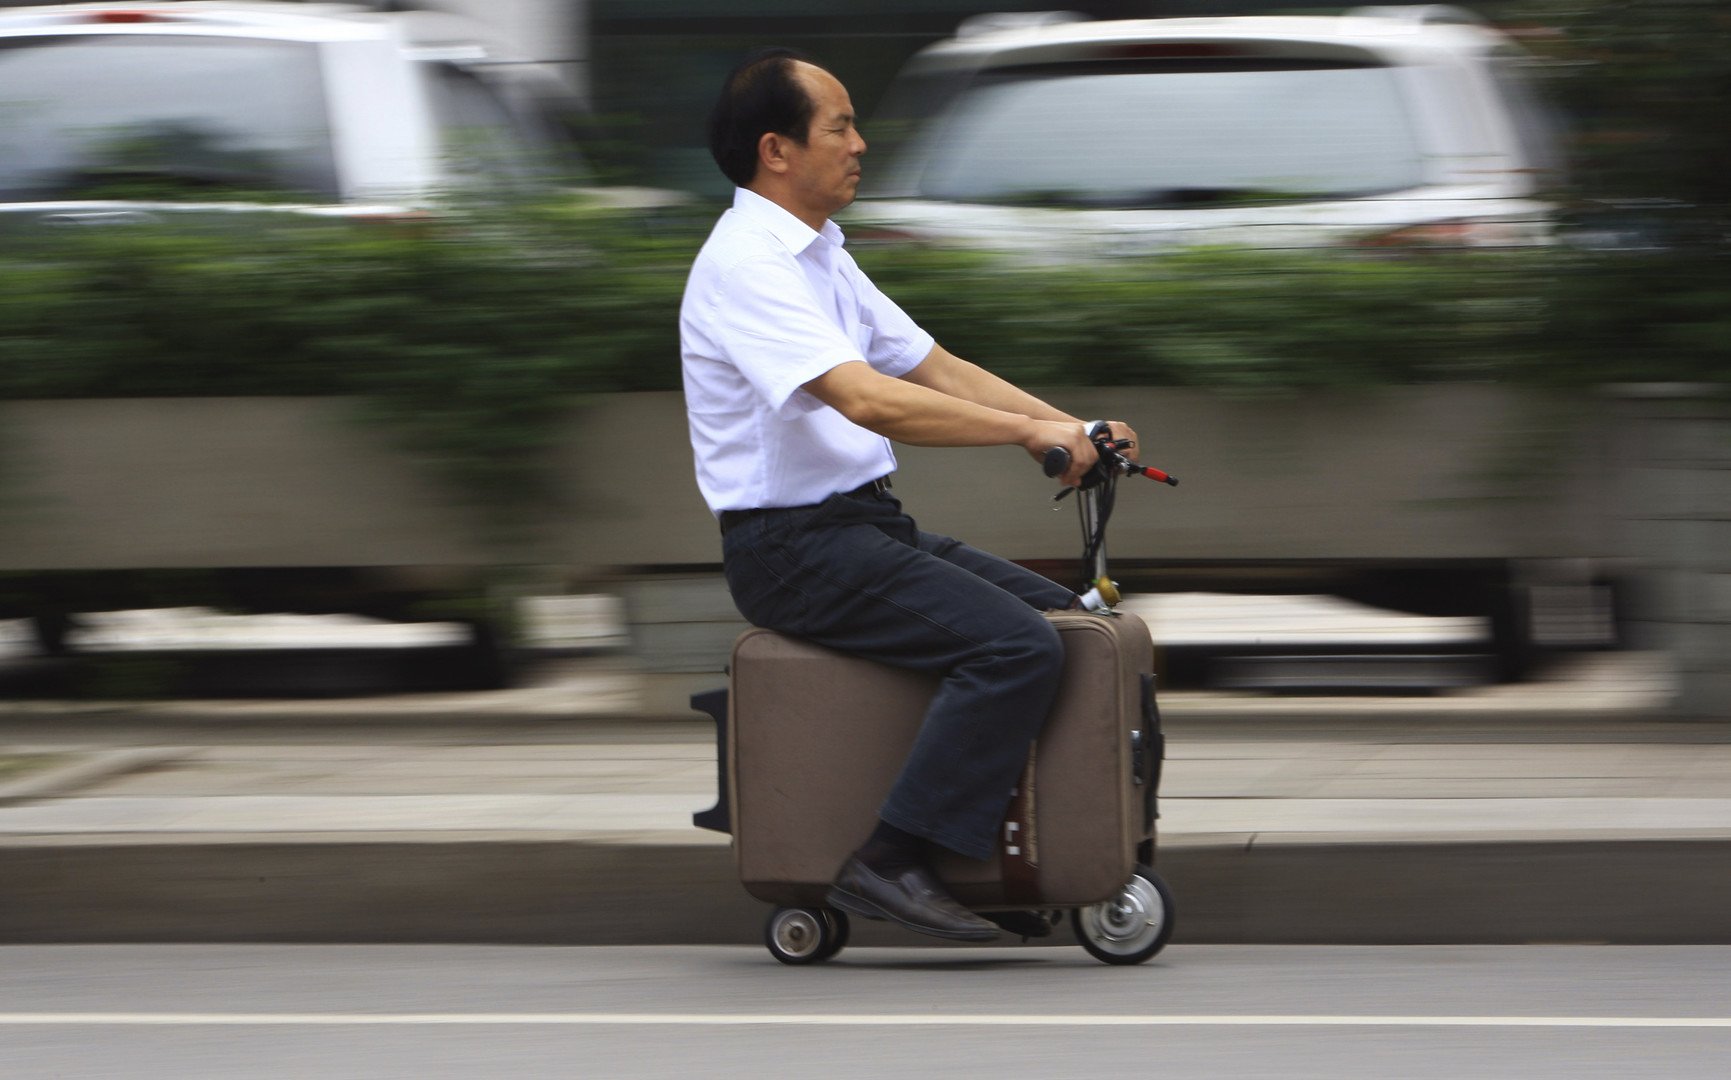 هي ليانغ يقود حقيبته اليدوية ذات المحرك المصنوعة يدويا في مقاطعة هونان الصينية، 28 مايو 2014